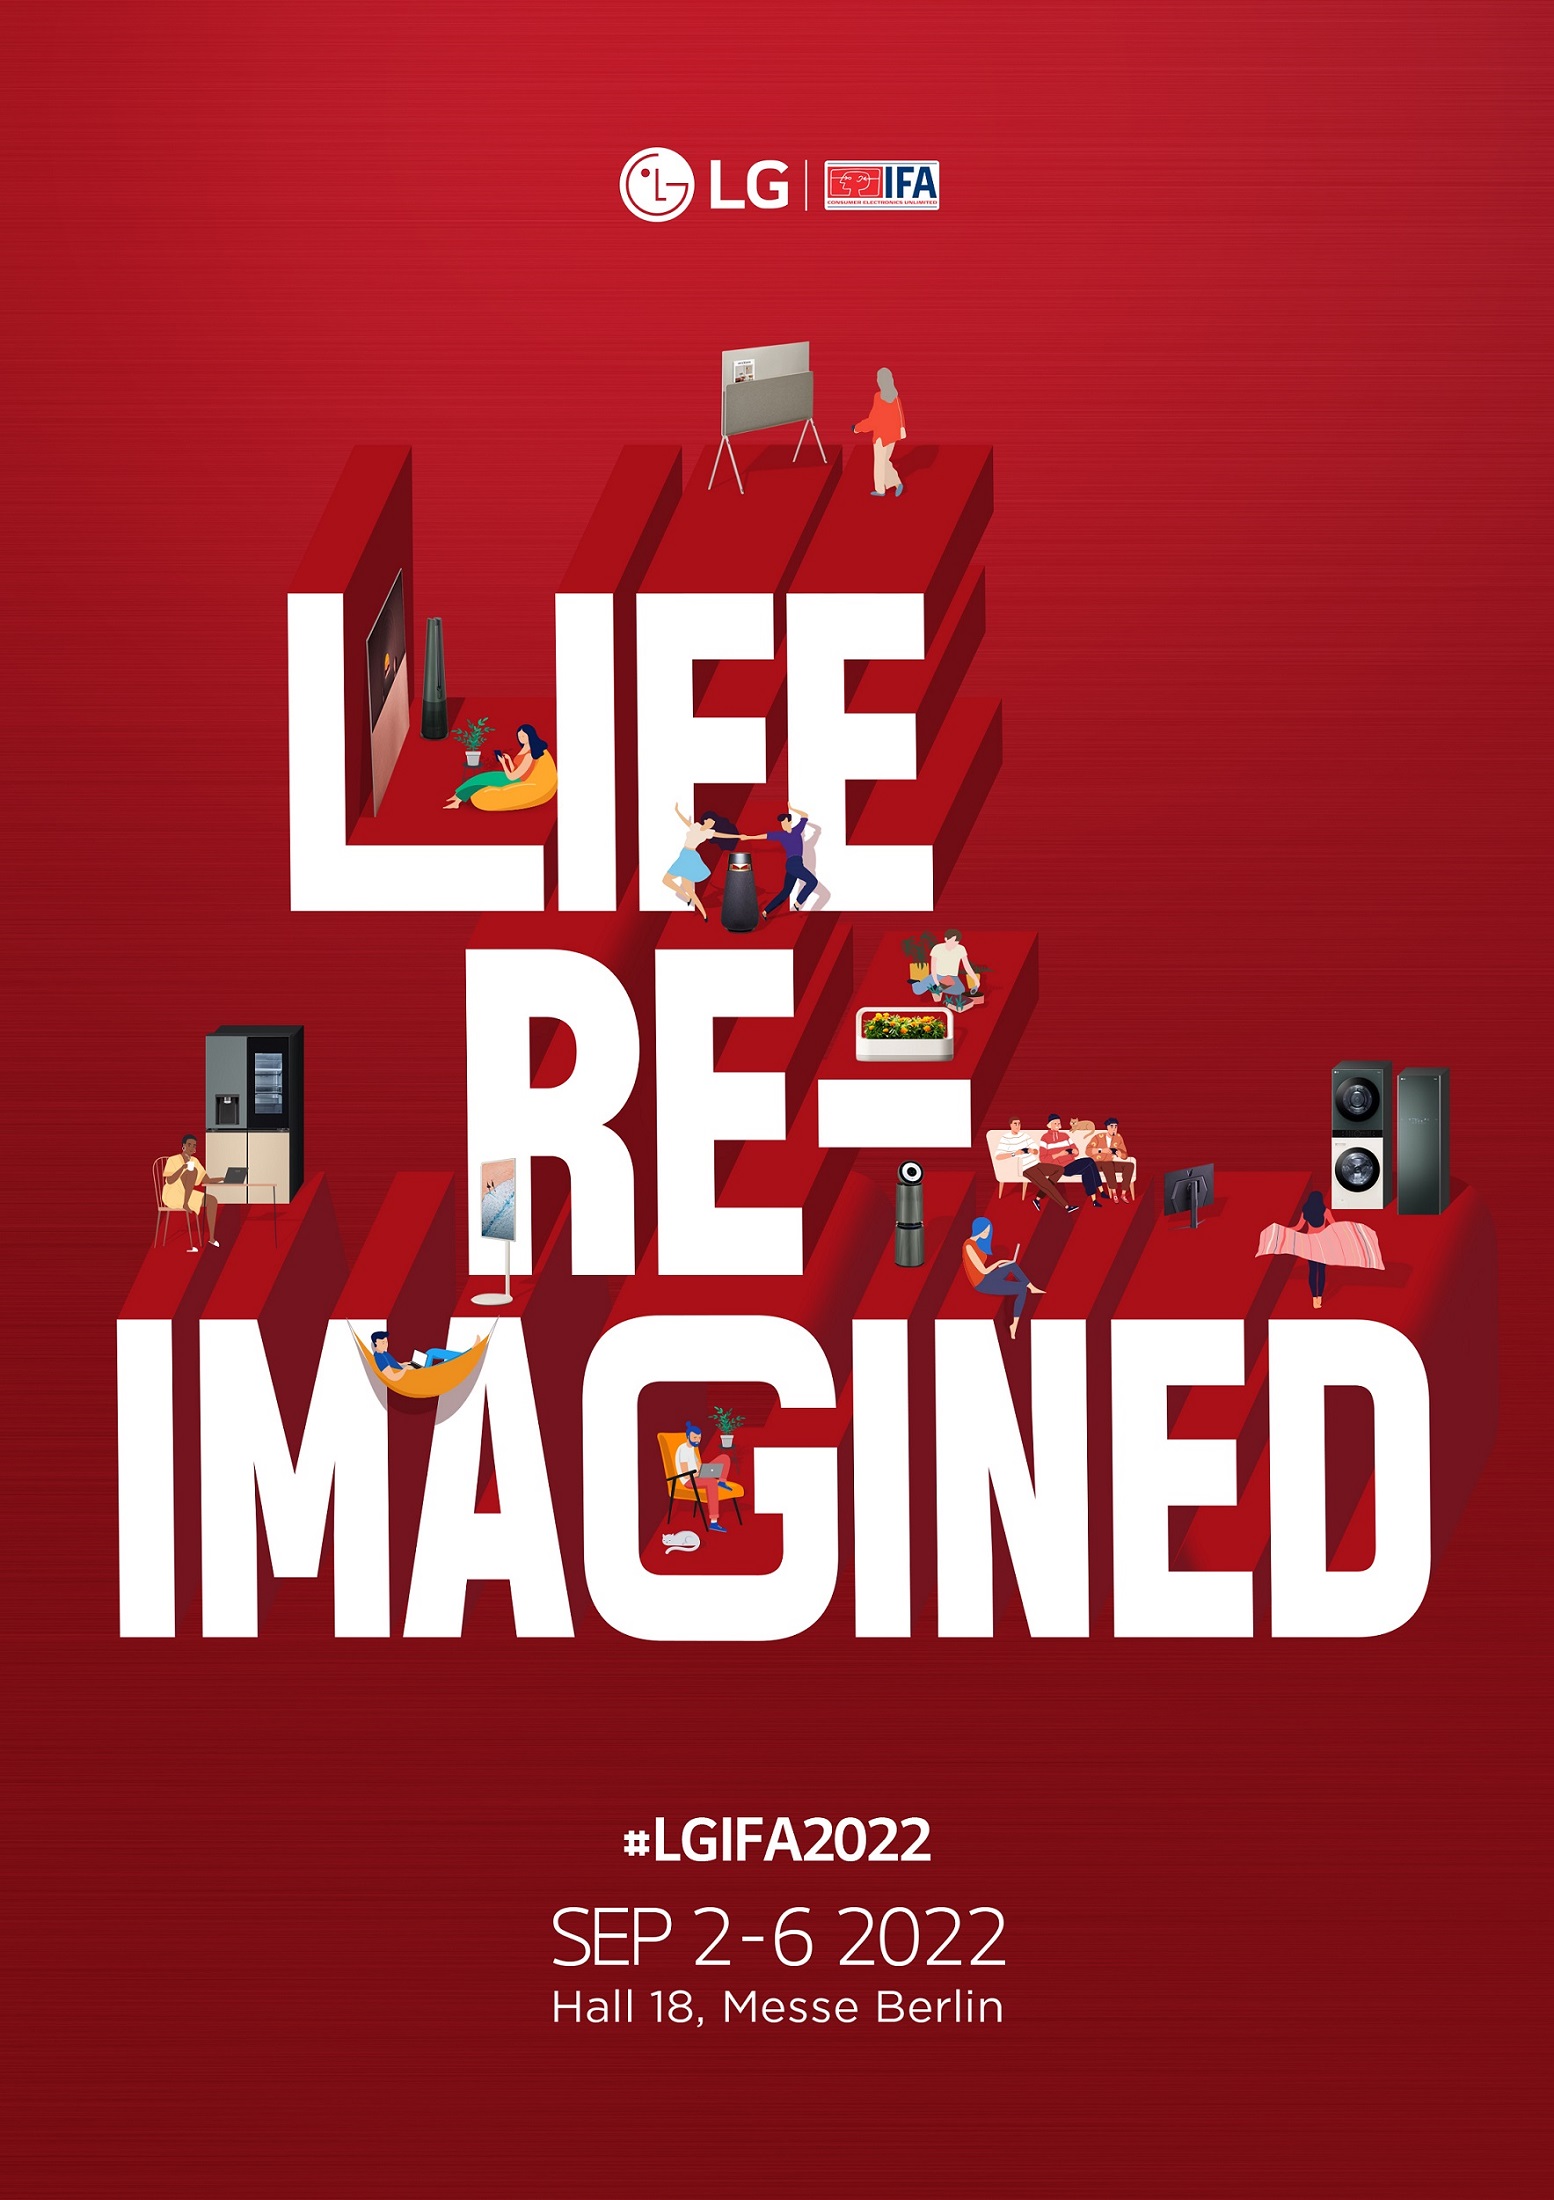 ال جی در نمایشگاه IFA 2022 نوآوری های پیشرفته خود را به نمایش می گذارد